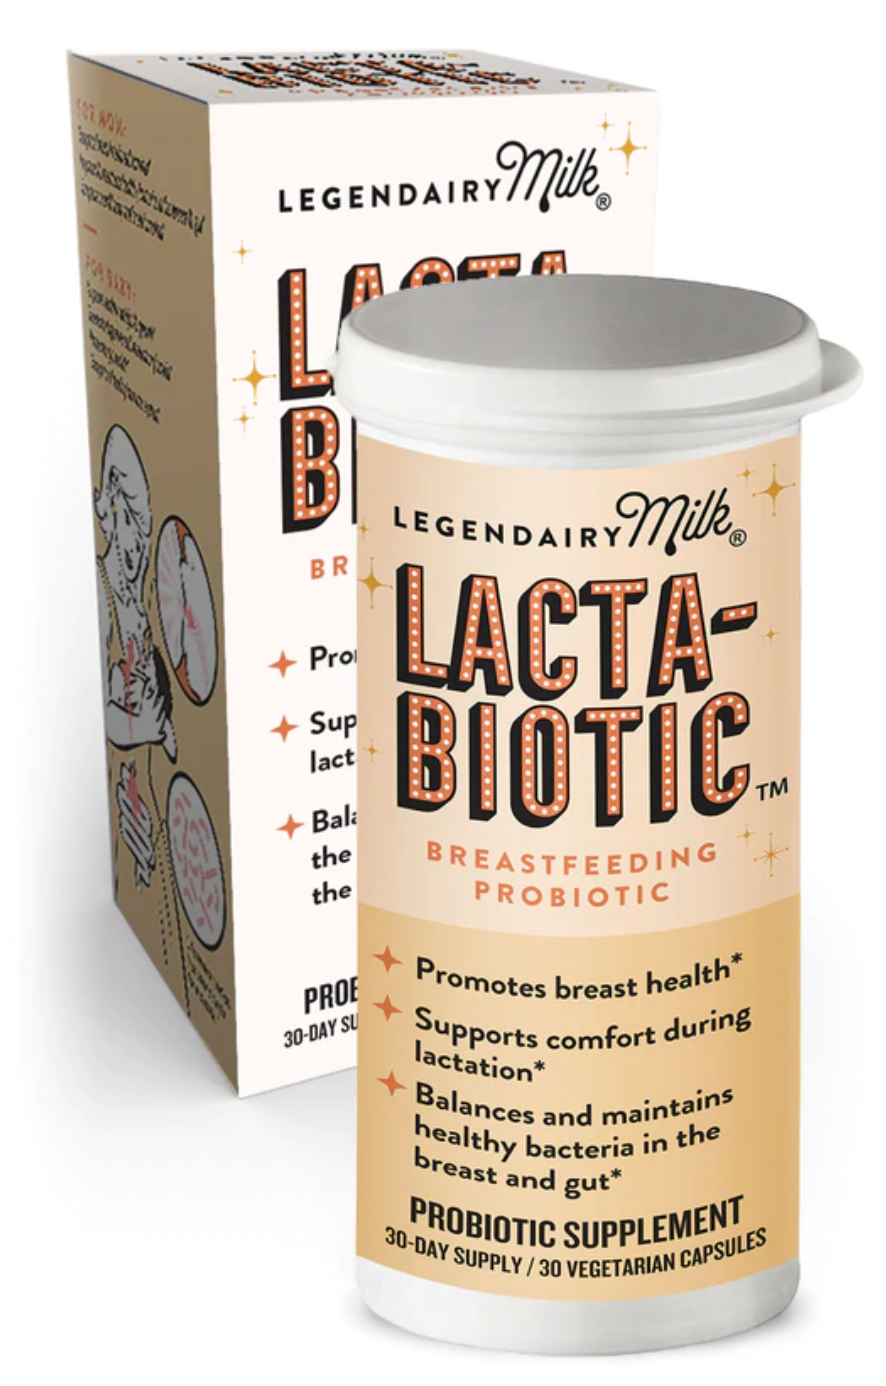 Why Lacta-biotic?